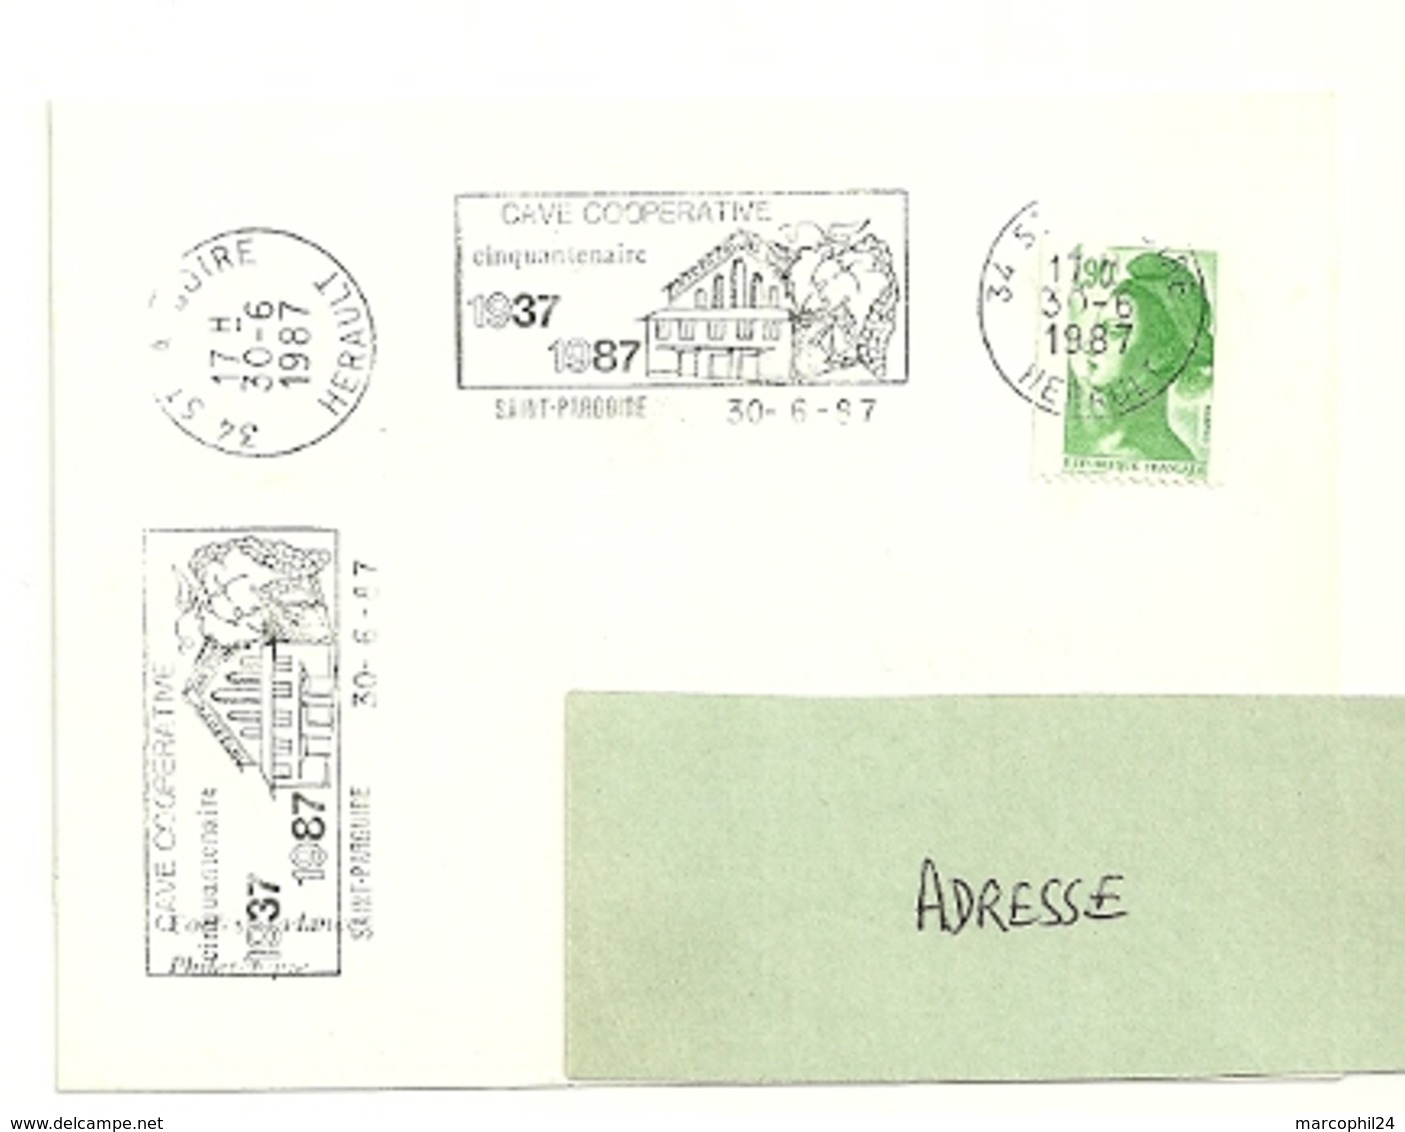 HERAULT - Dépt N° 34 = St PARGOIRE 1987 =  FLAMME Type II = SECAP Illustrée  '1937 Cinquantenaire Cave Coopérative' - Mechanical Postmarks (Advertisement)